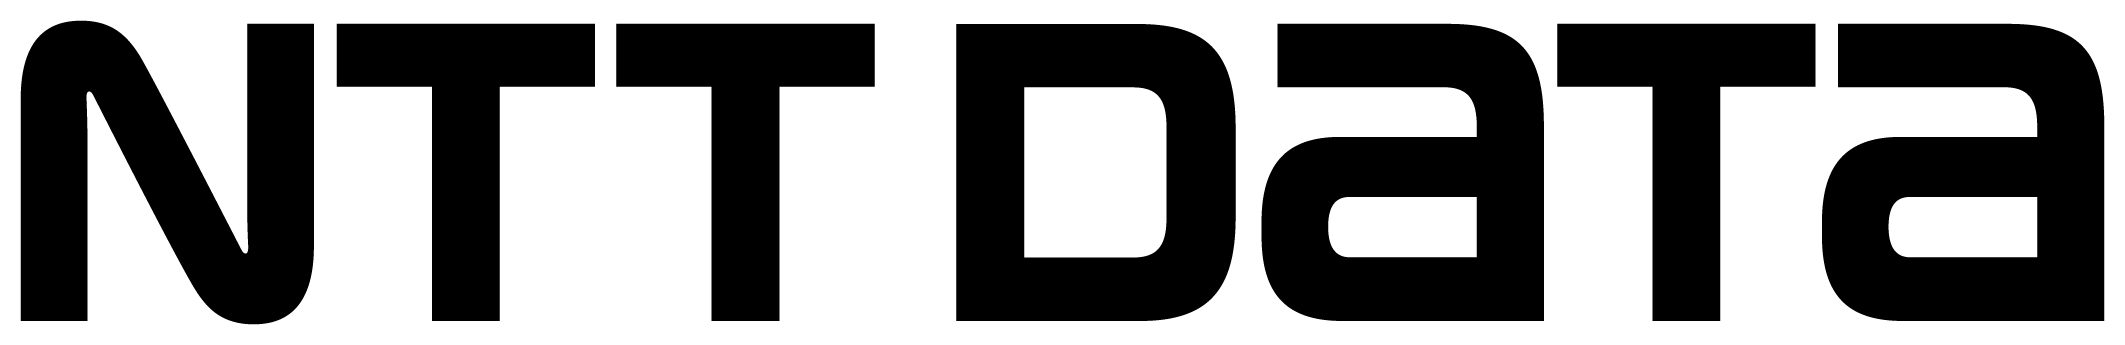 NTT-Data-Logo.png